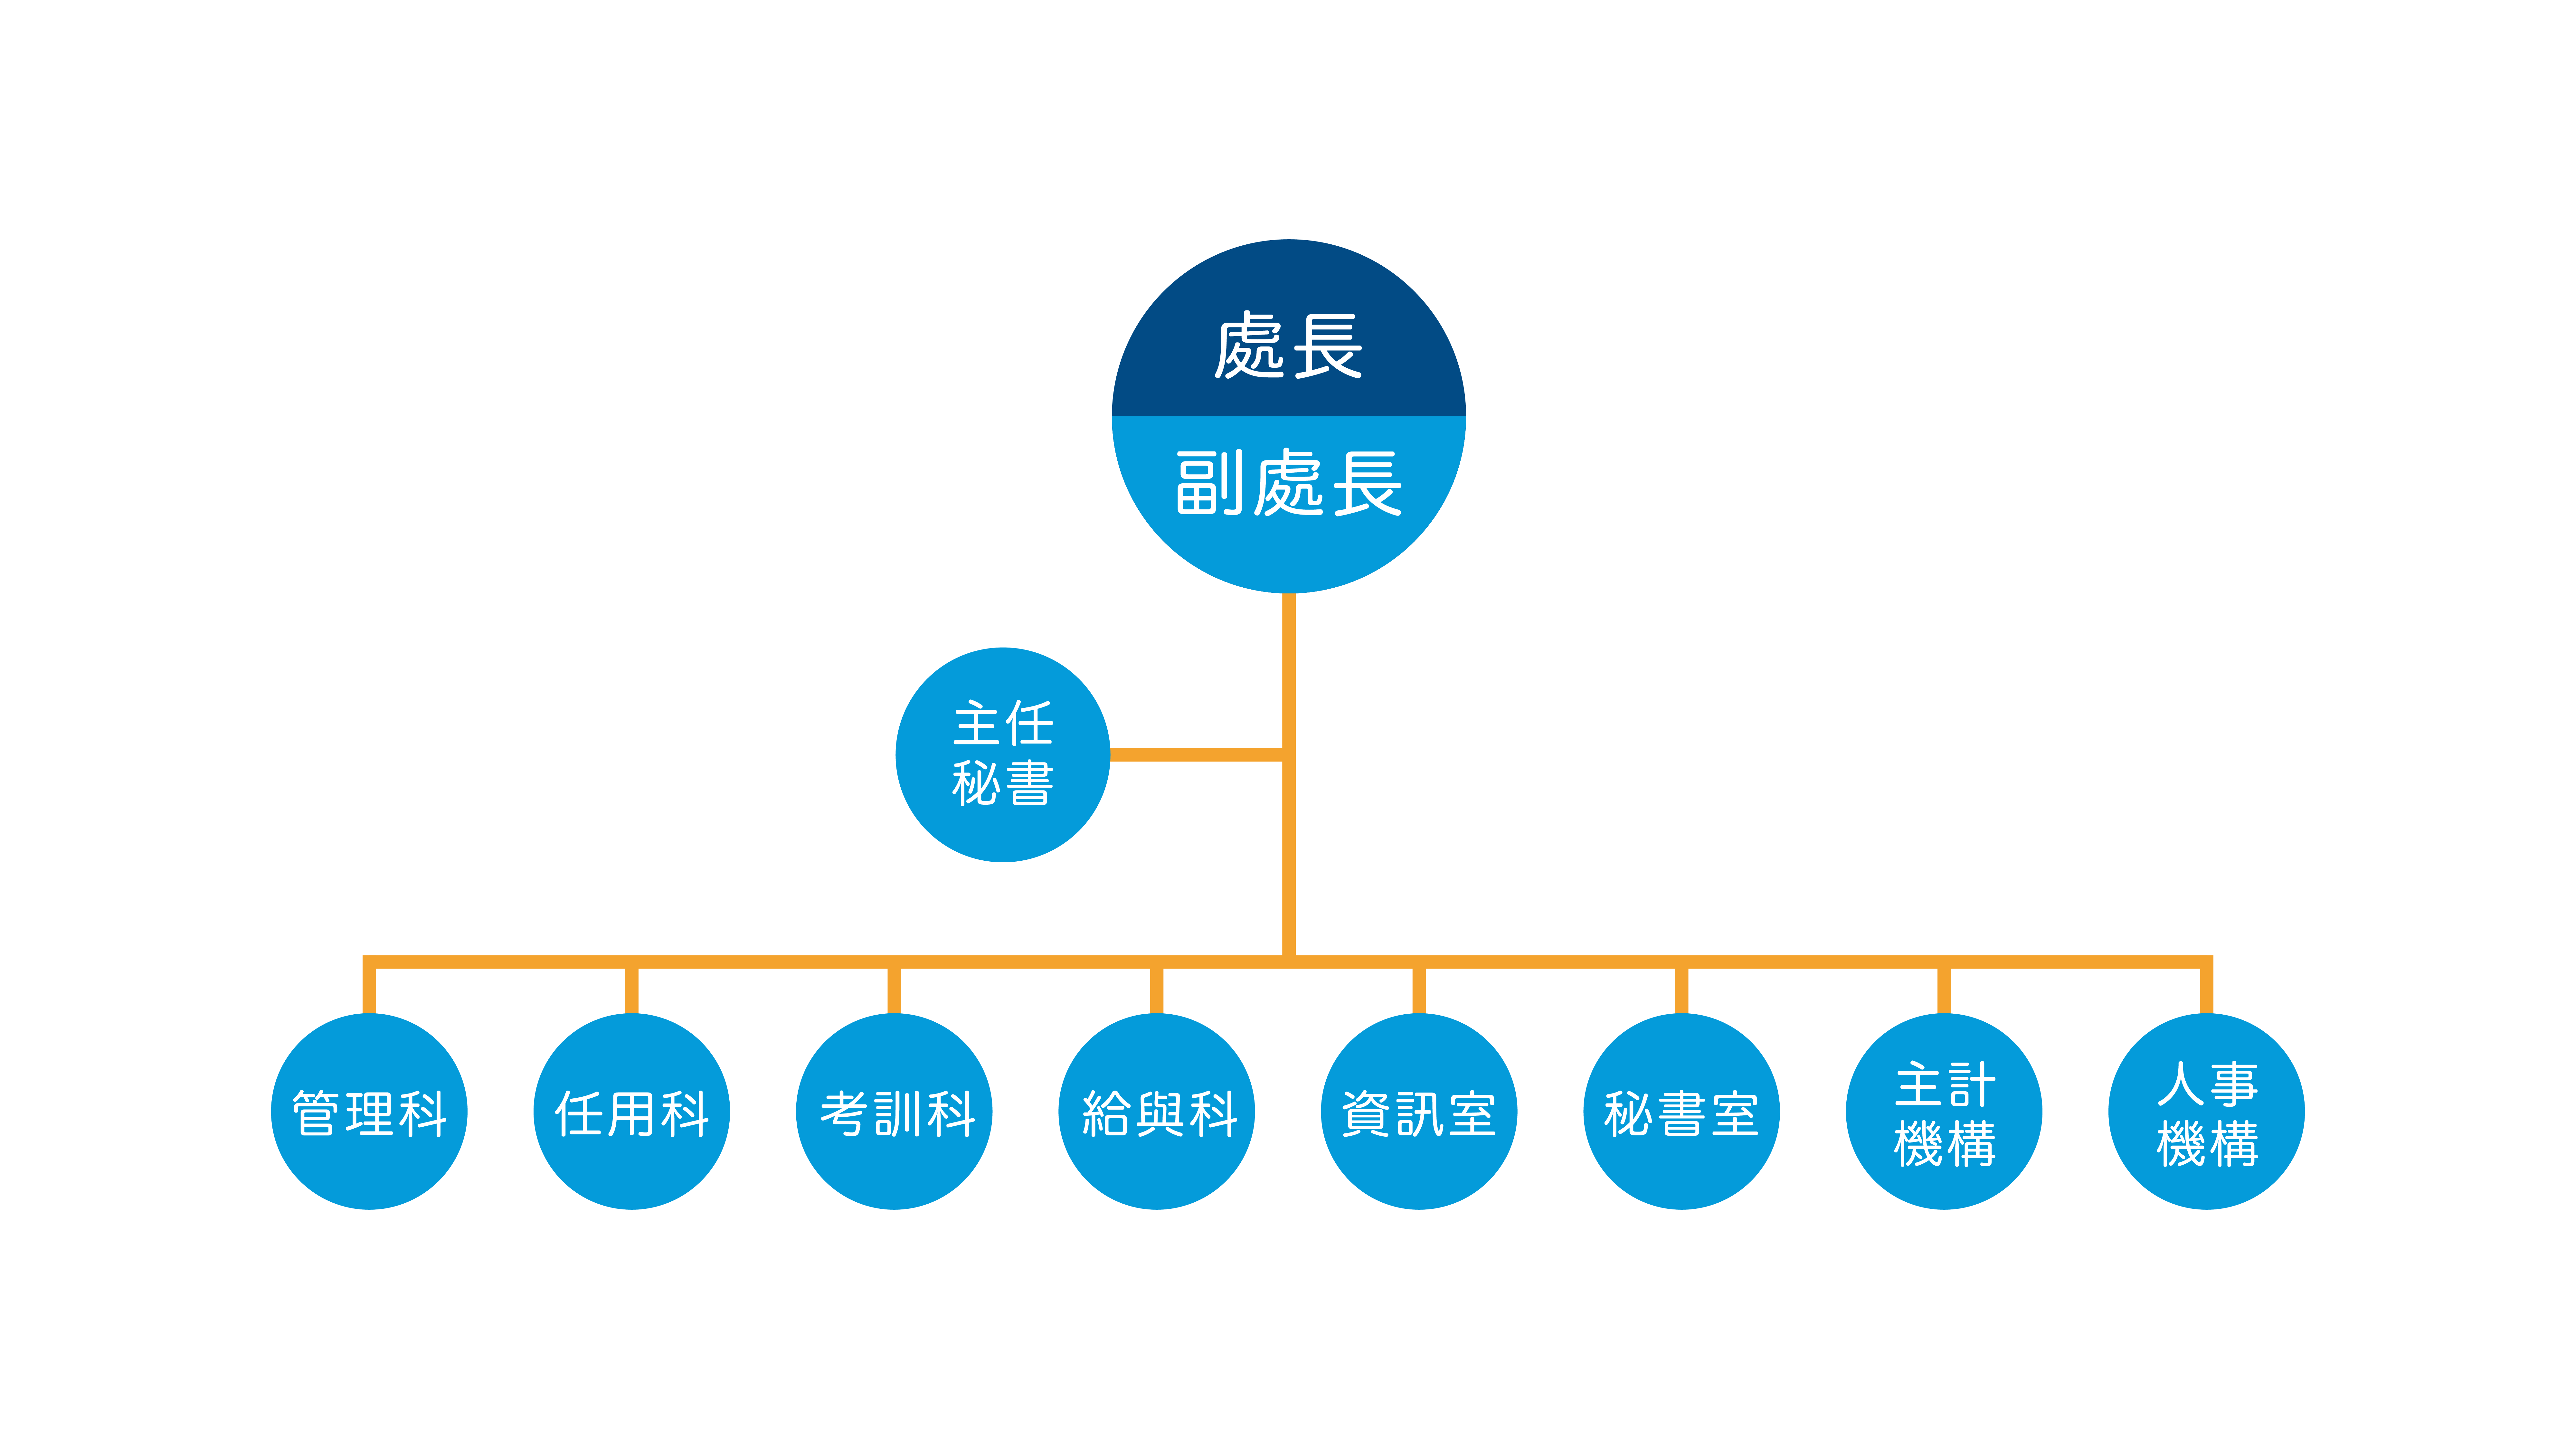 臺北市政府人事處組織架構圖